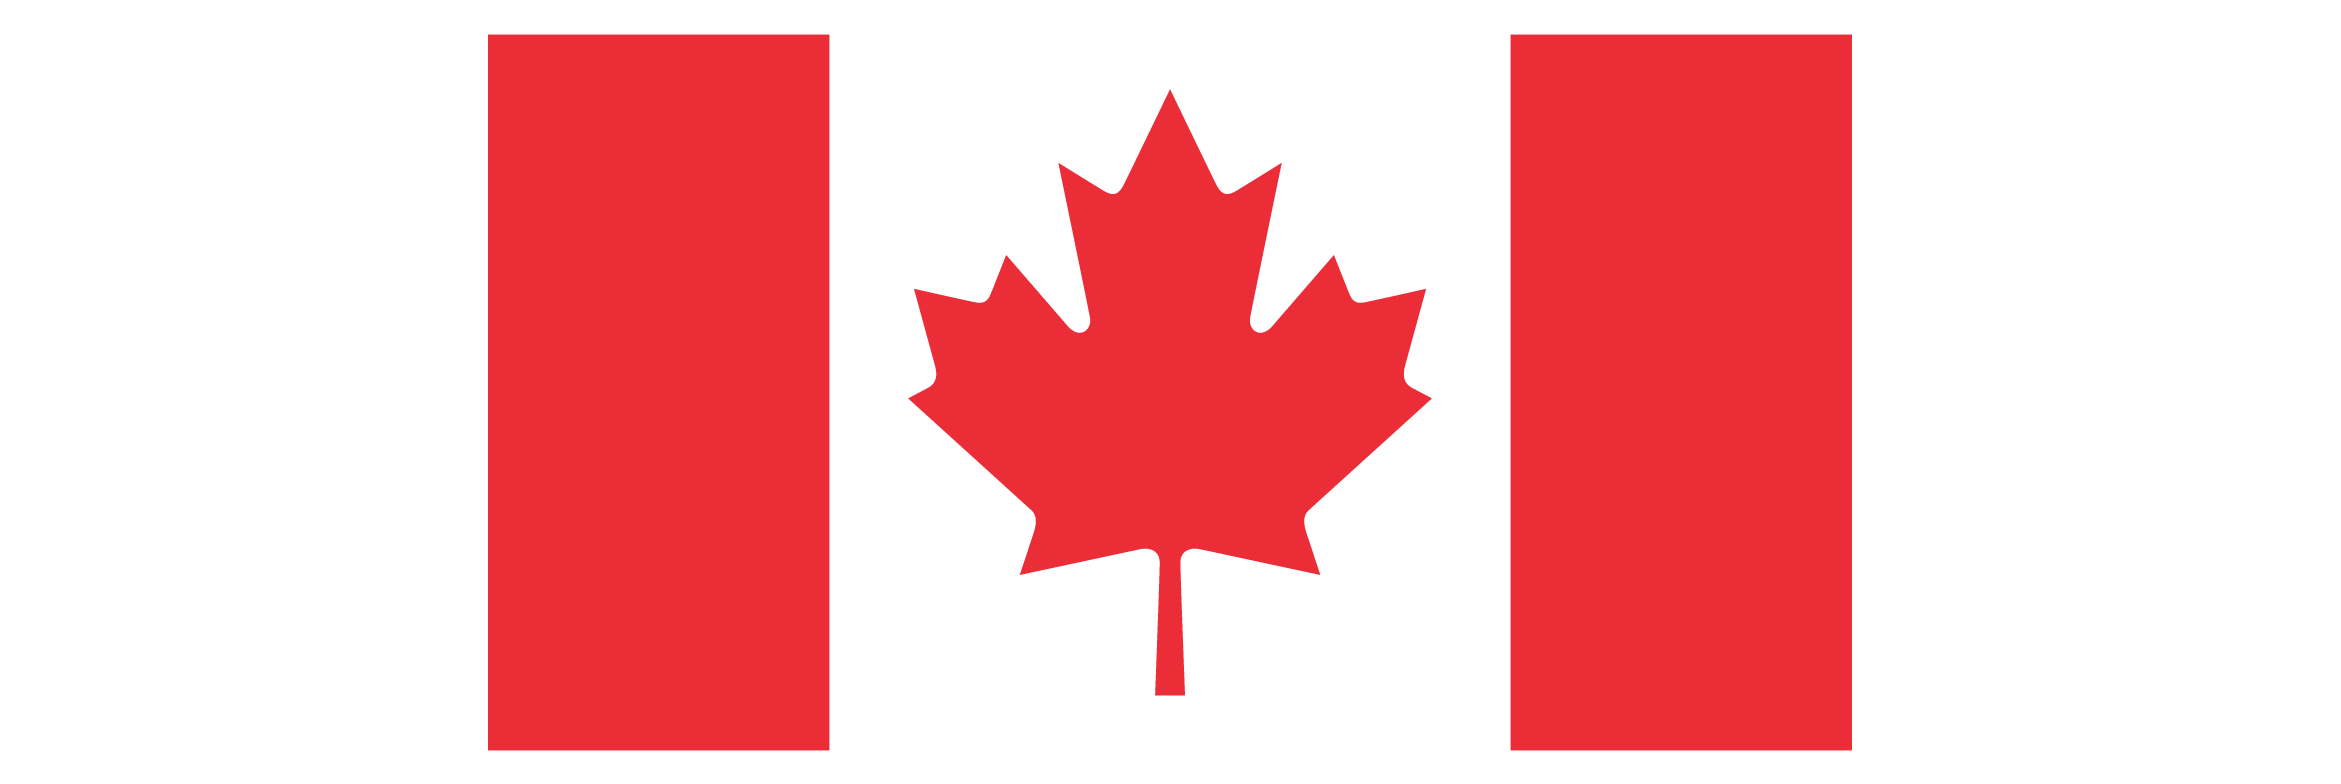 Le symbole du drapeau. L’un des symboles officiels du gouvernement du Canada.